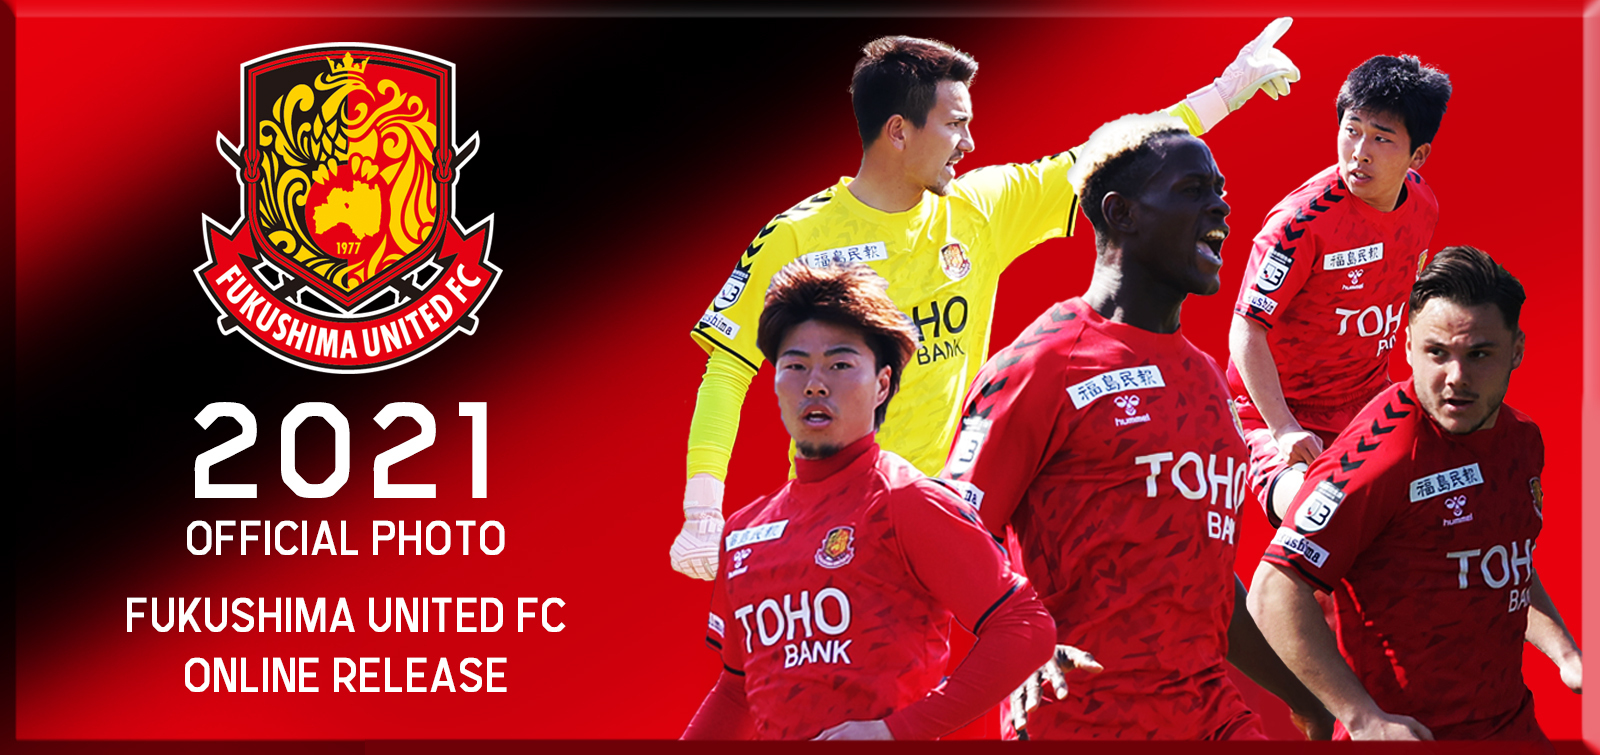 福島ユナイテッドｆｃ 公式サイト Fukushima United Fc Official Website